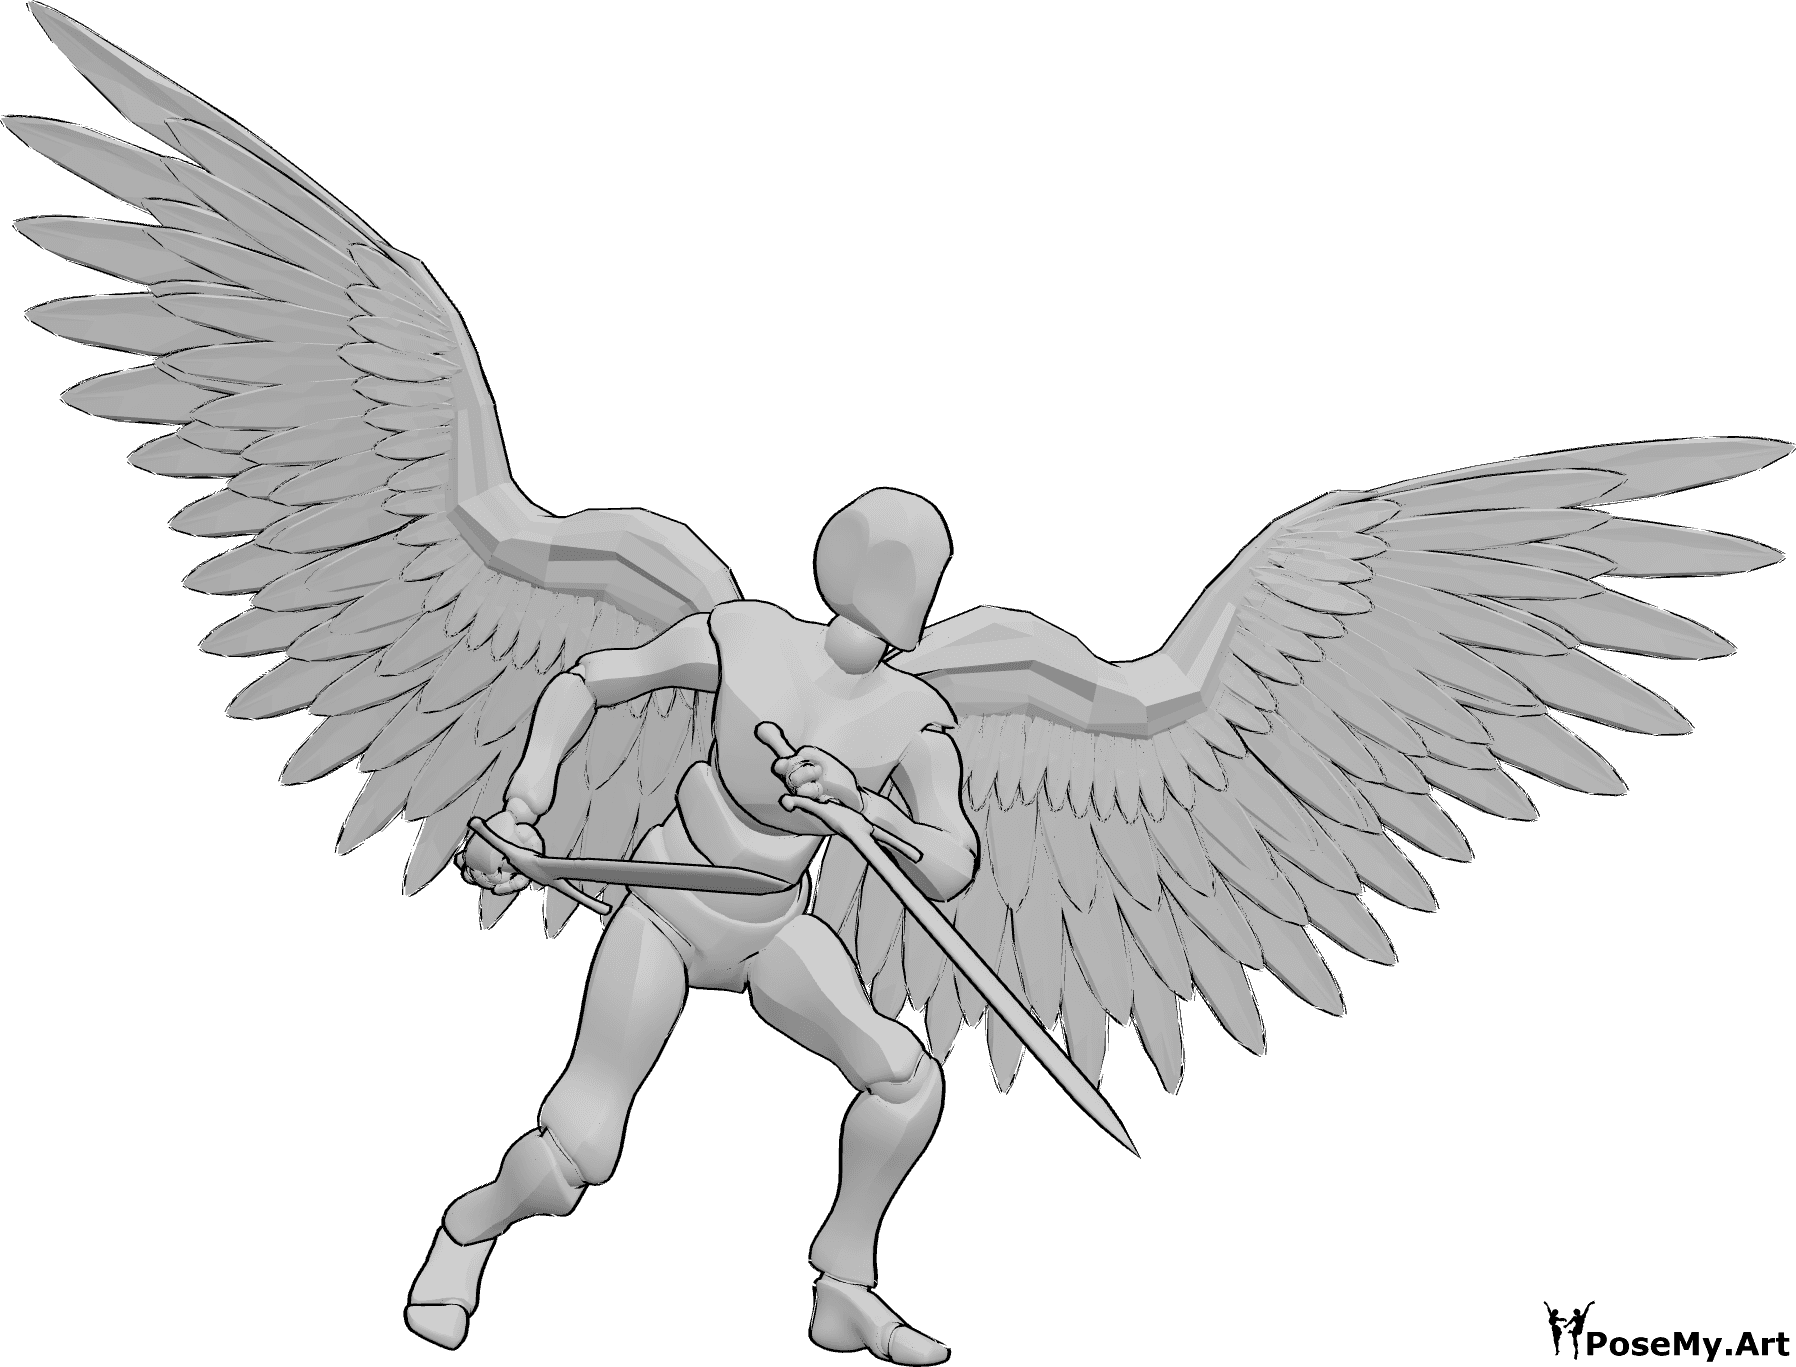 Referência de poses- Pose de espada de anjo masculino - O anjo masculino está de pé e segura duas grandes espadas, pronto para a pose de combate